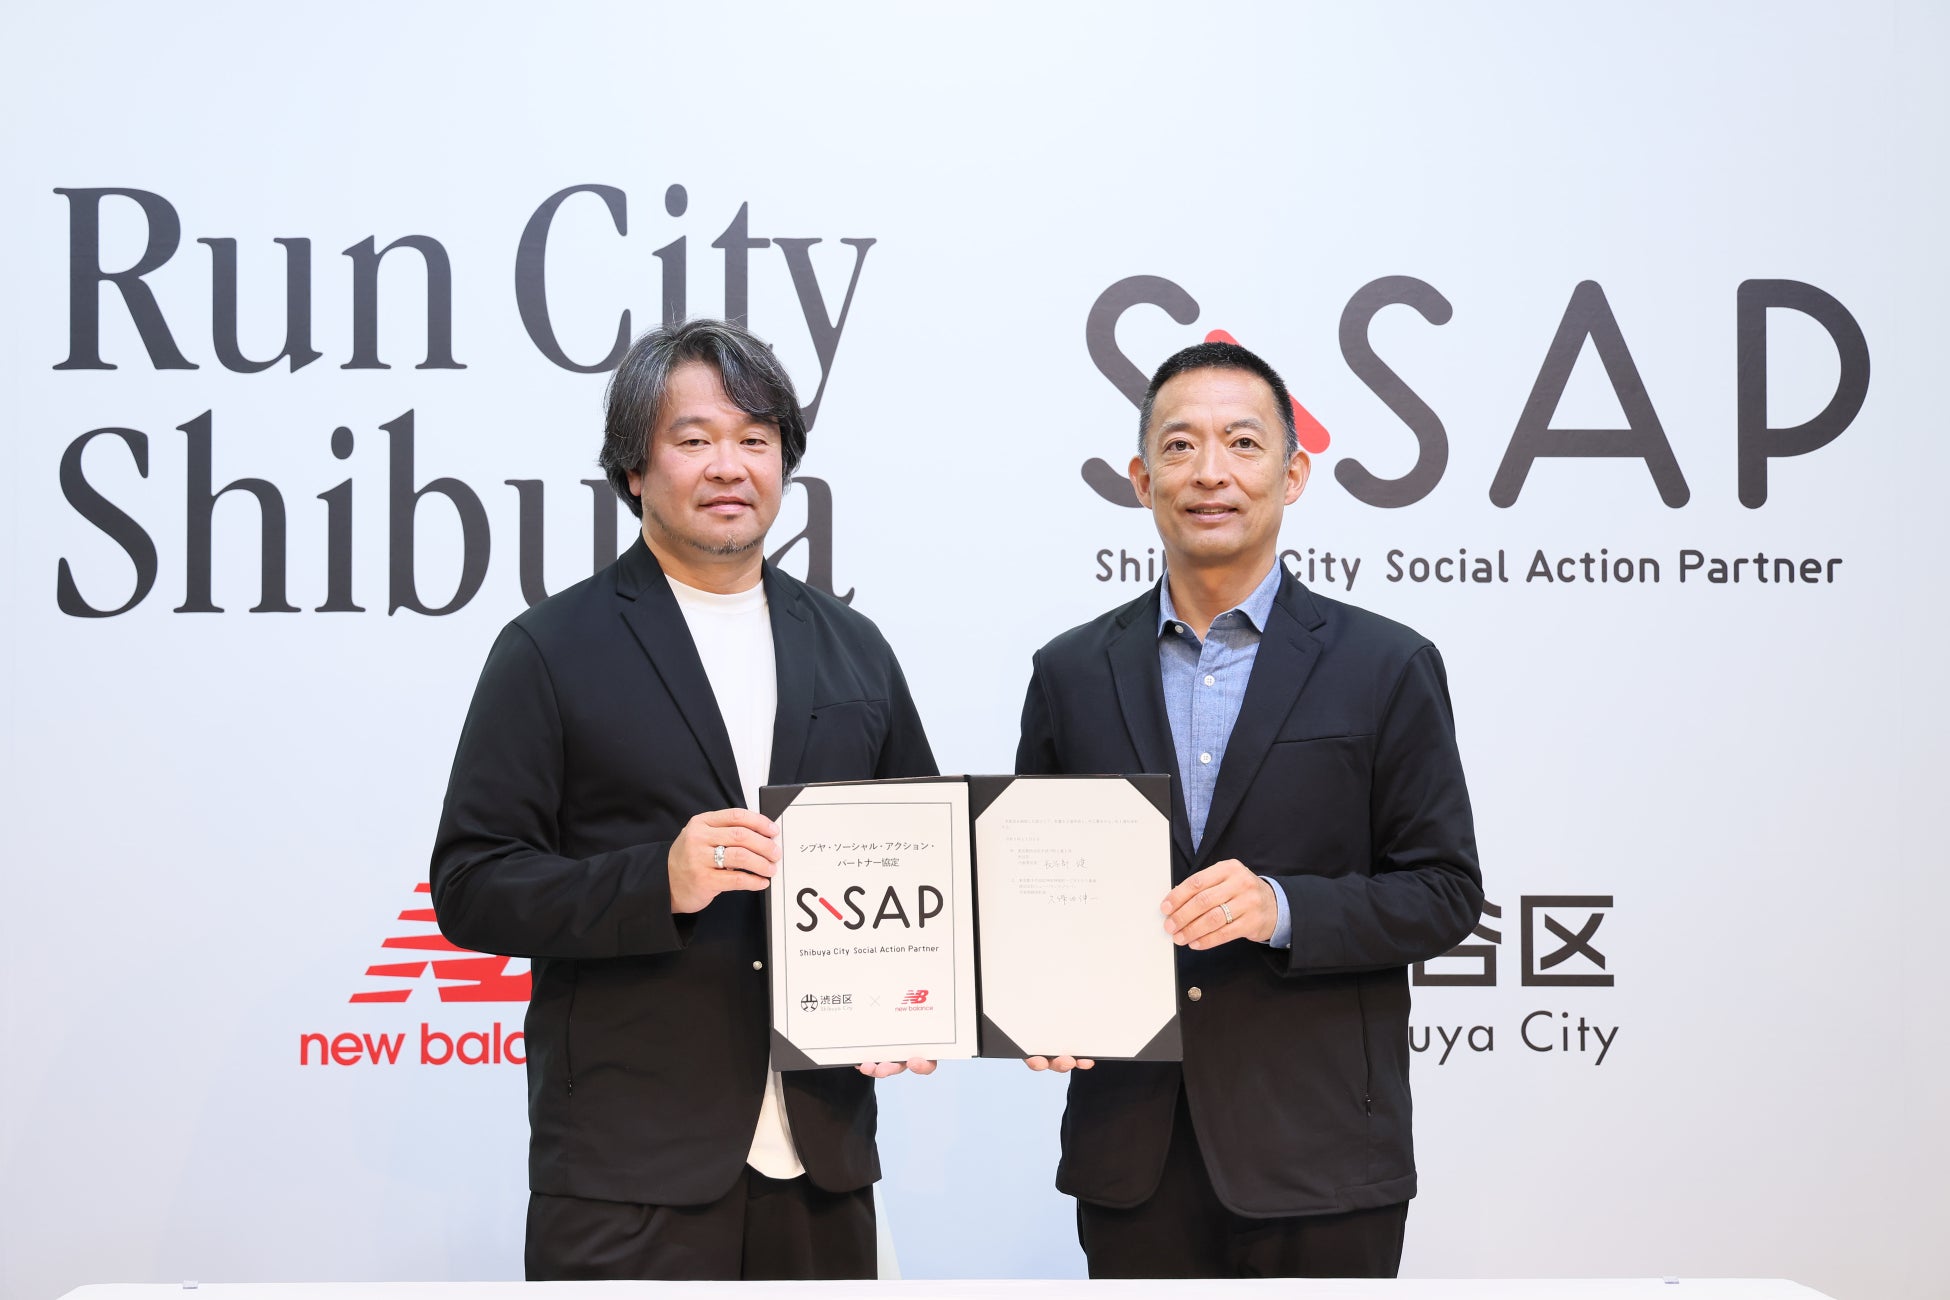 ニューバランスジャパンと渋谷区は「S-SAP（シブヤ・ソーシャル・アクション・パートナー）協定」を締結